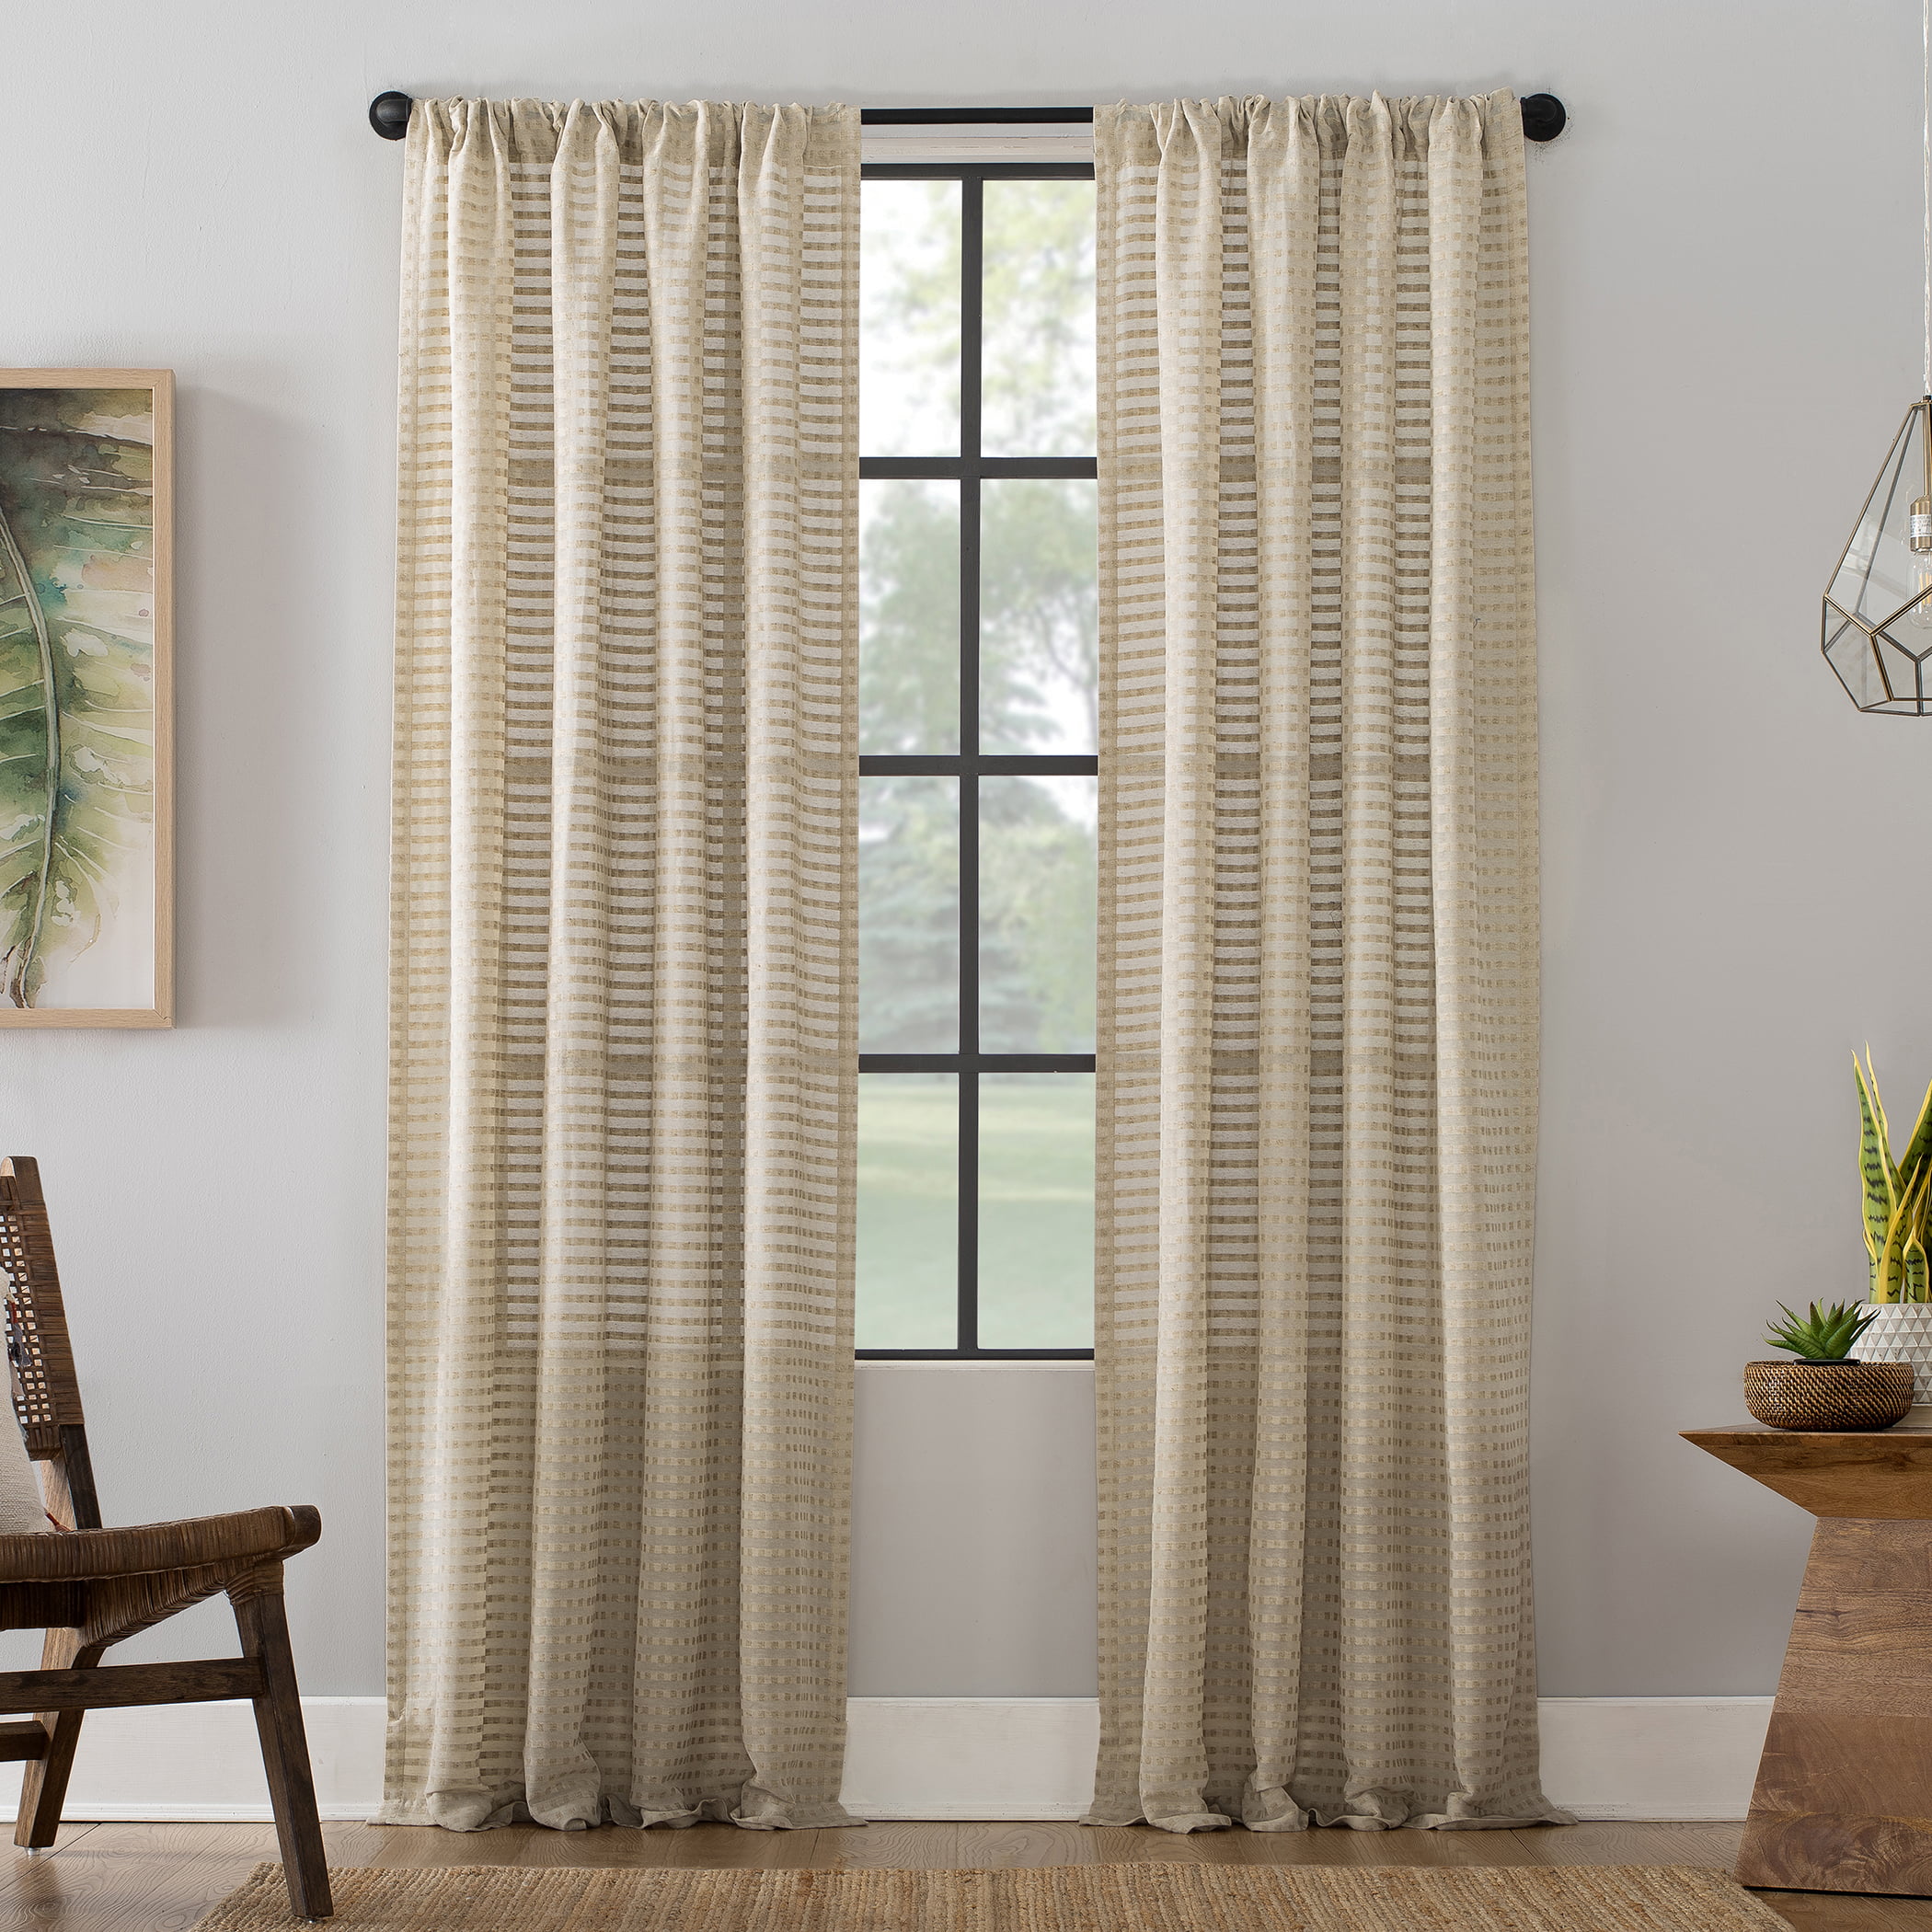 2 lichtenberg Clean Window Check Pattern Curtain Panels Anti-dust Allergen Free 